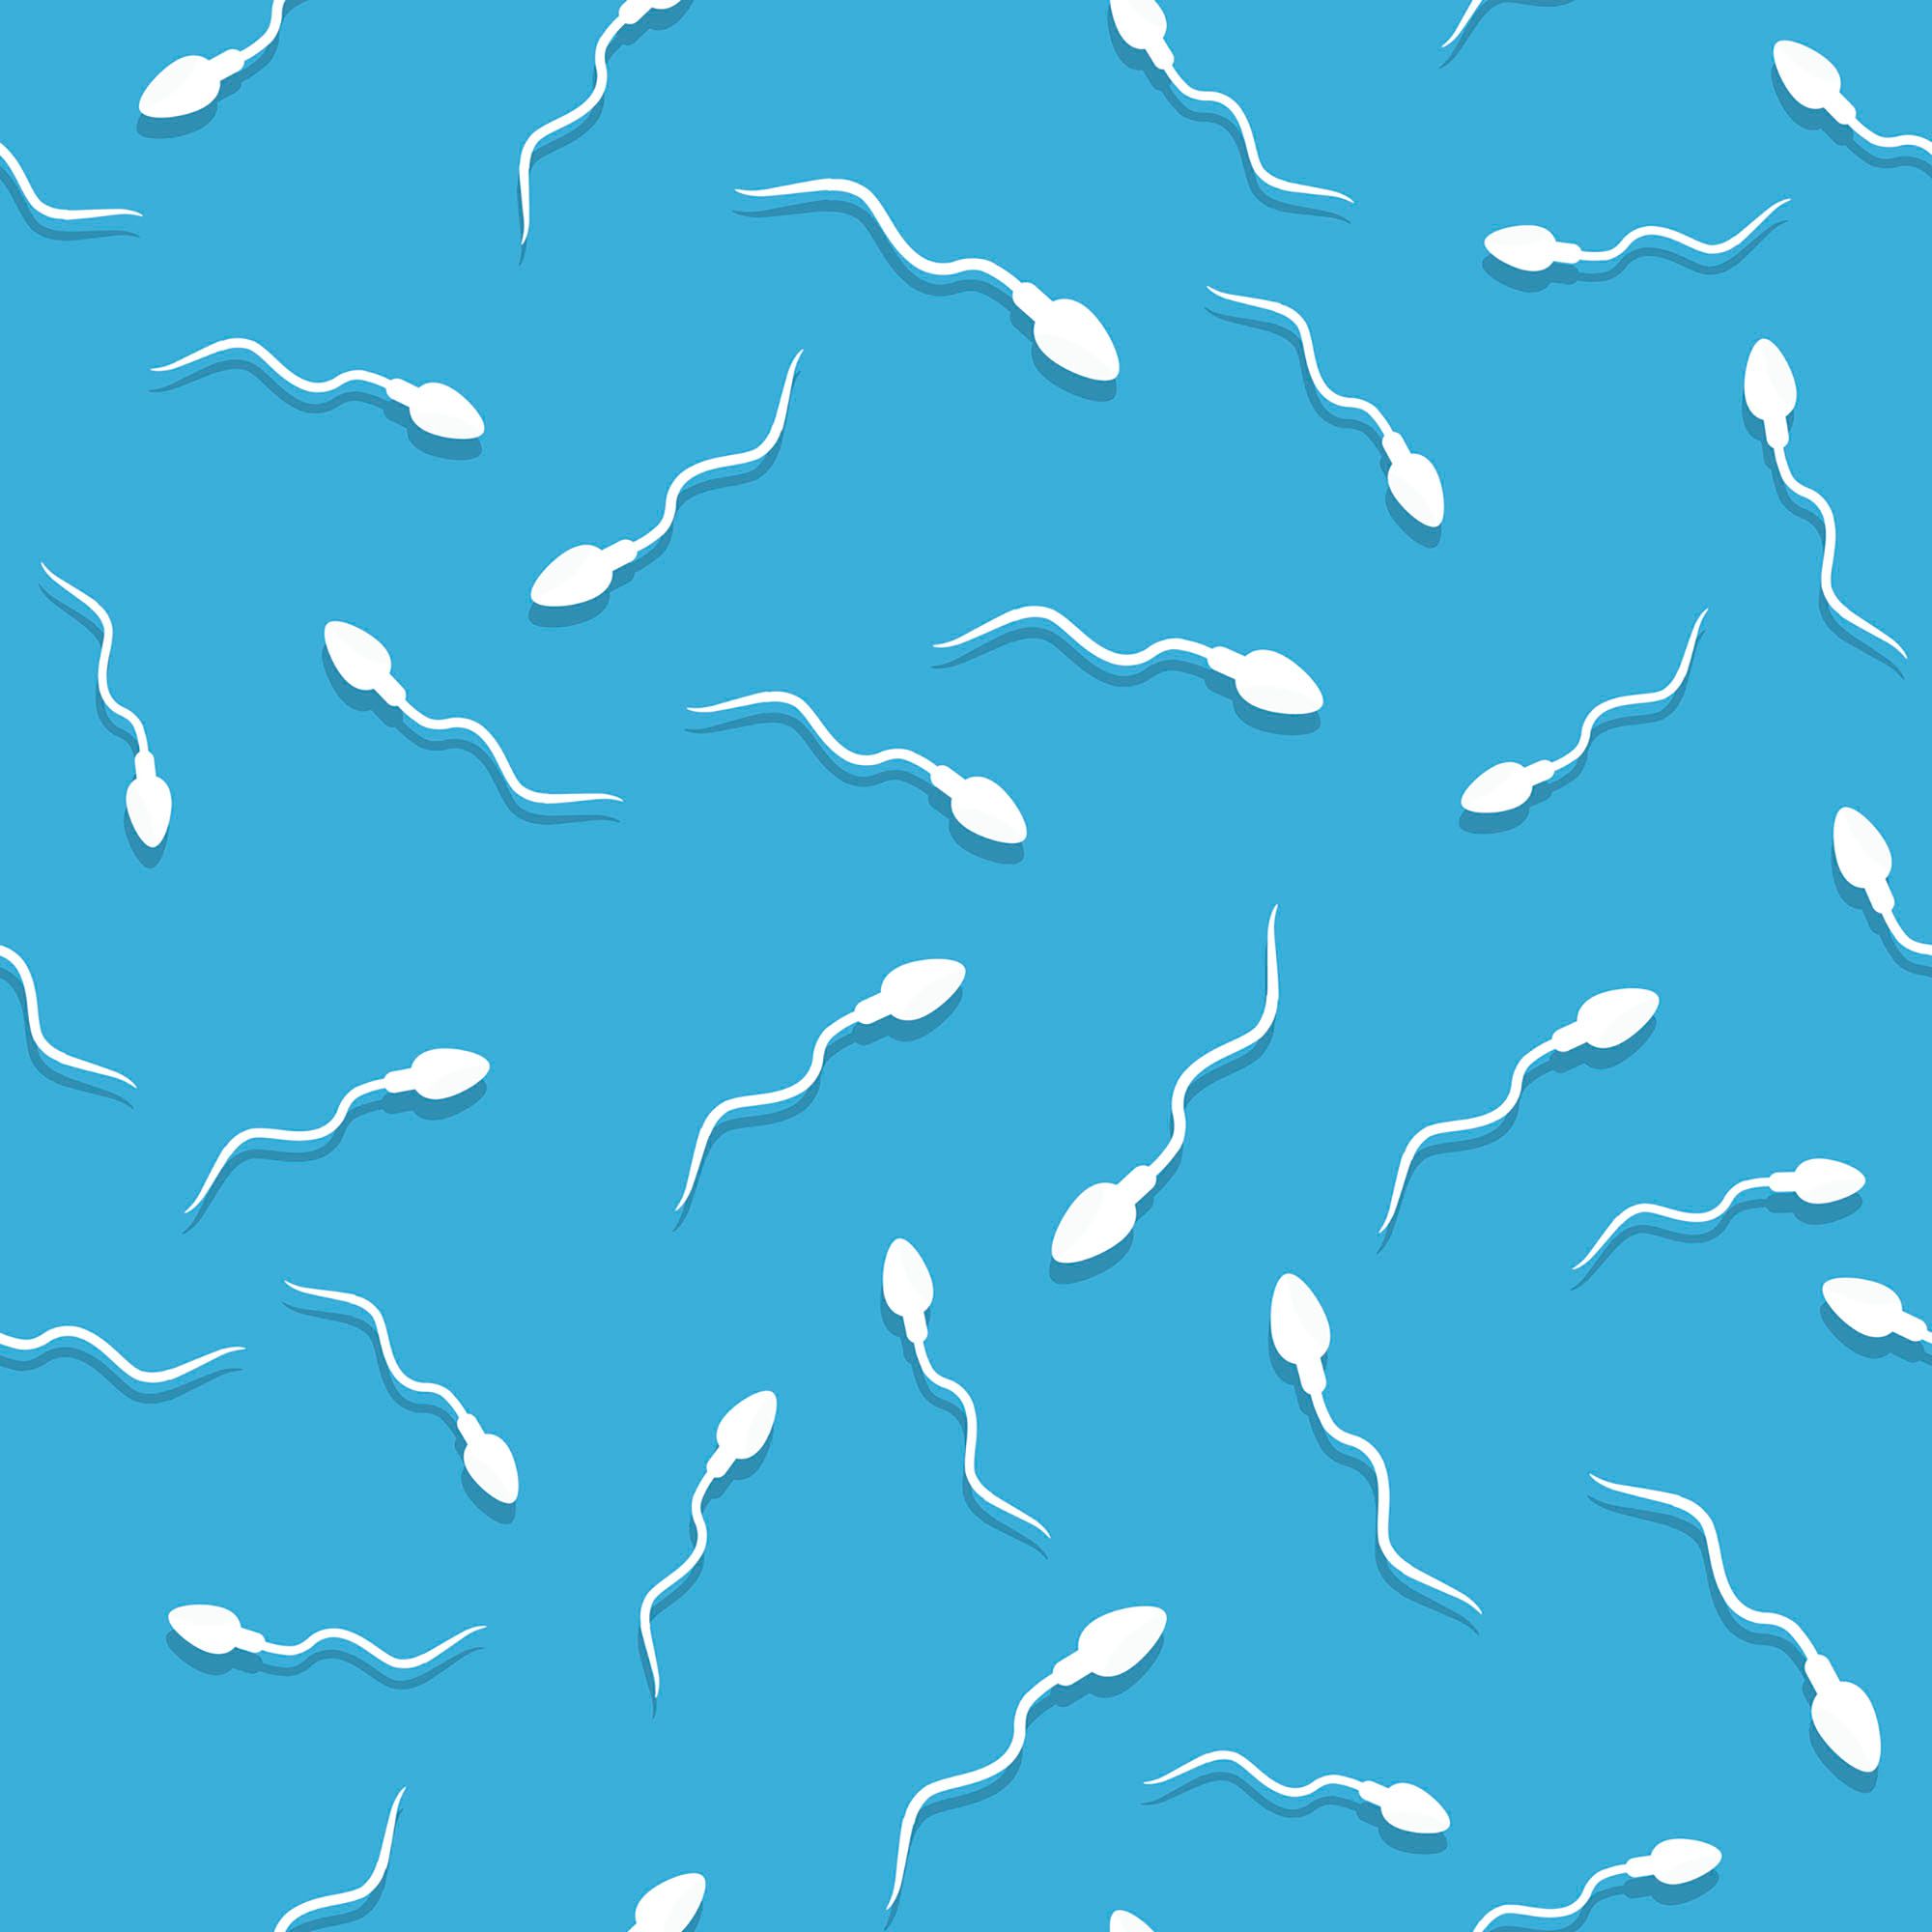 Bakterien im Sperma - Grafik von Spermien auf blauem Hintergrund.